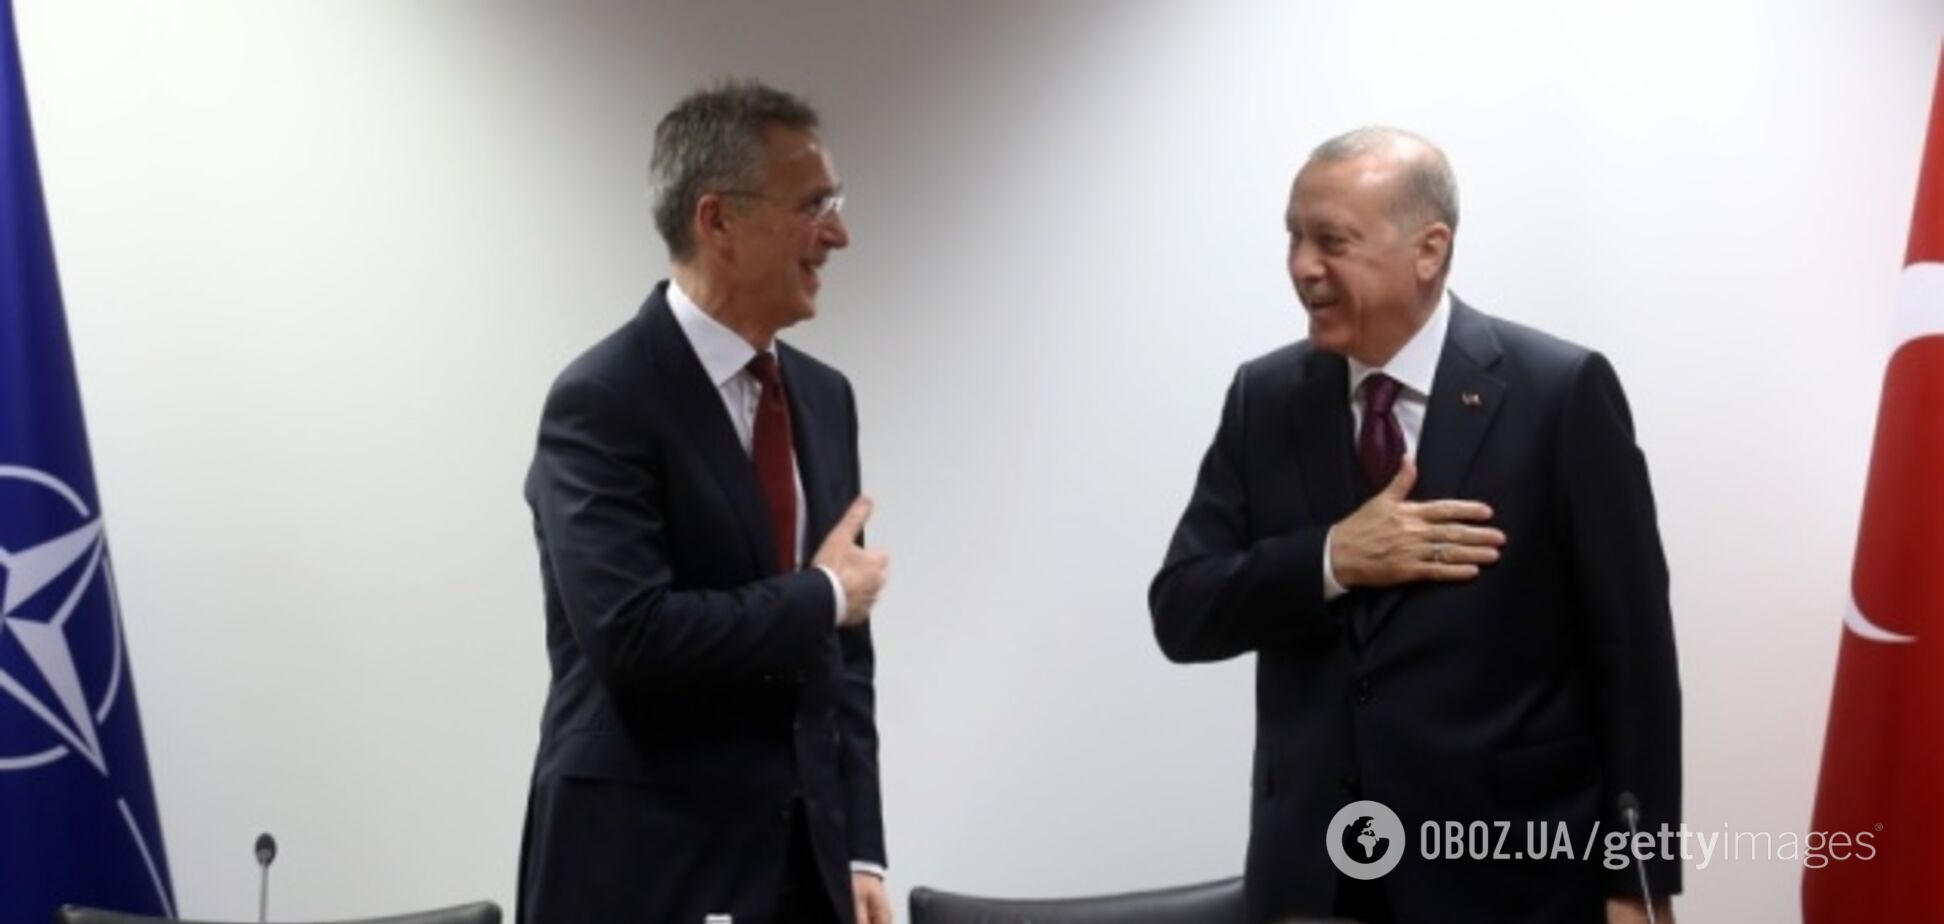 Эрдоган не пожал руку Столтенбергу при встрече: момент попал на видео